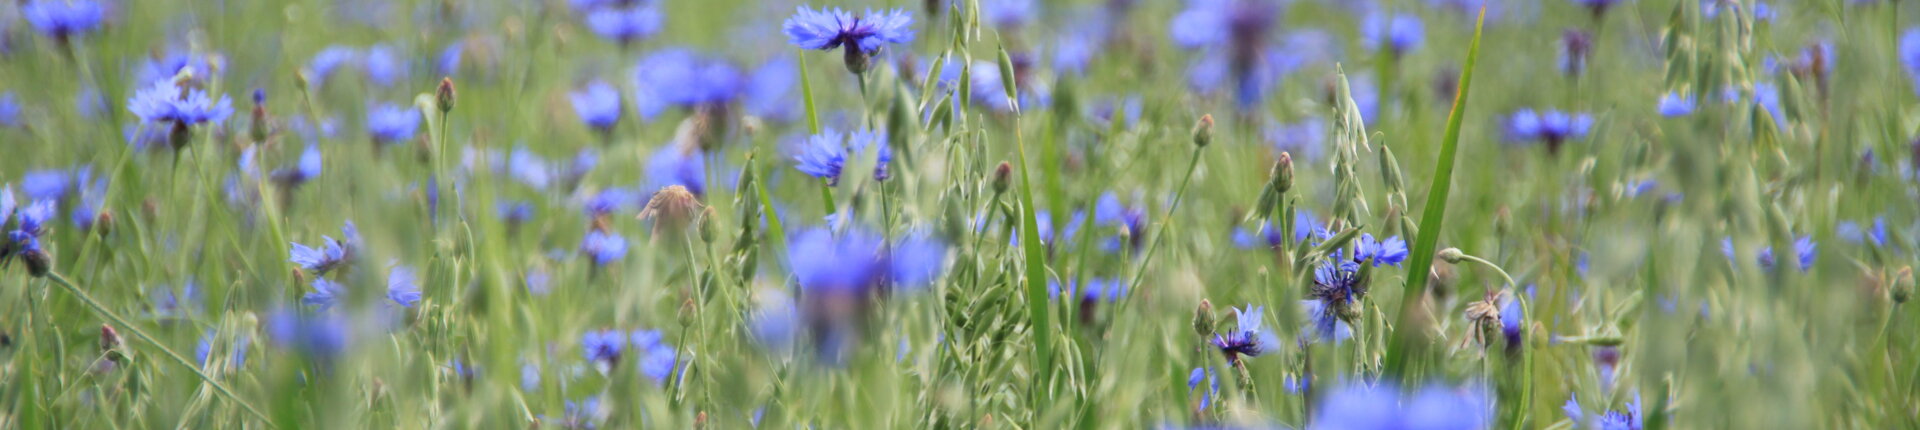 Foto eines sommerlichen Feldes mit Kornblumen